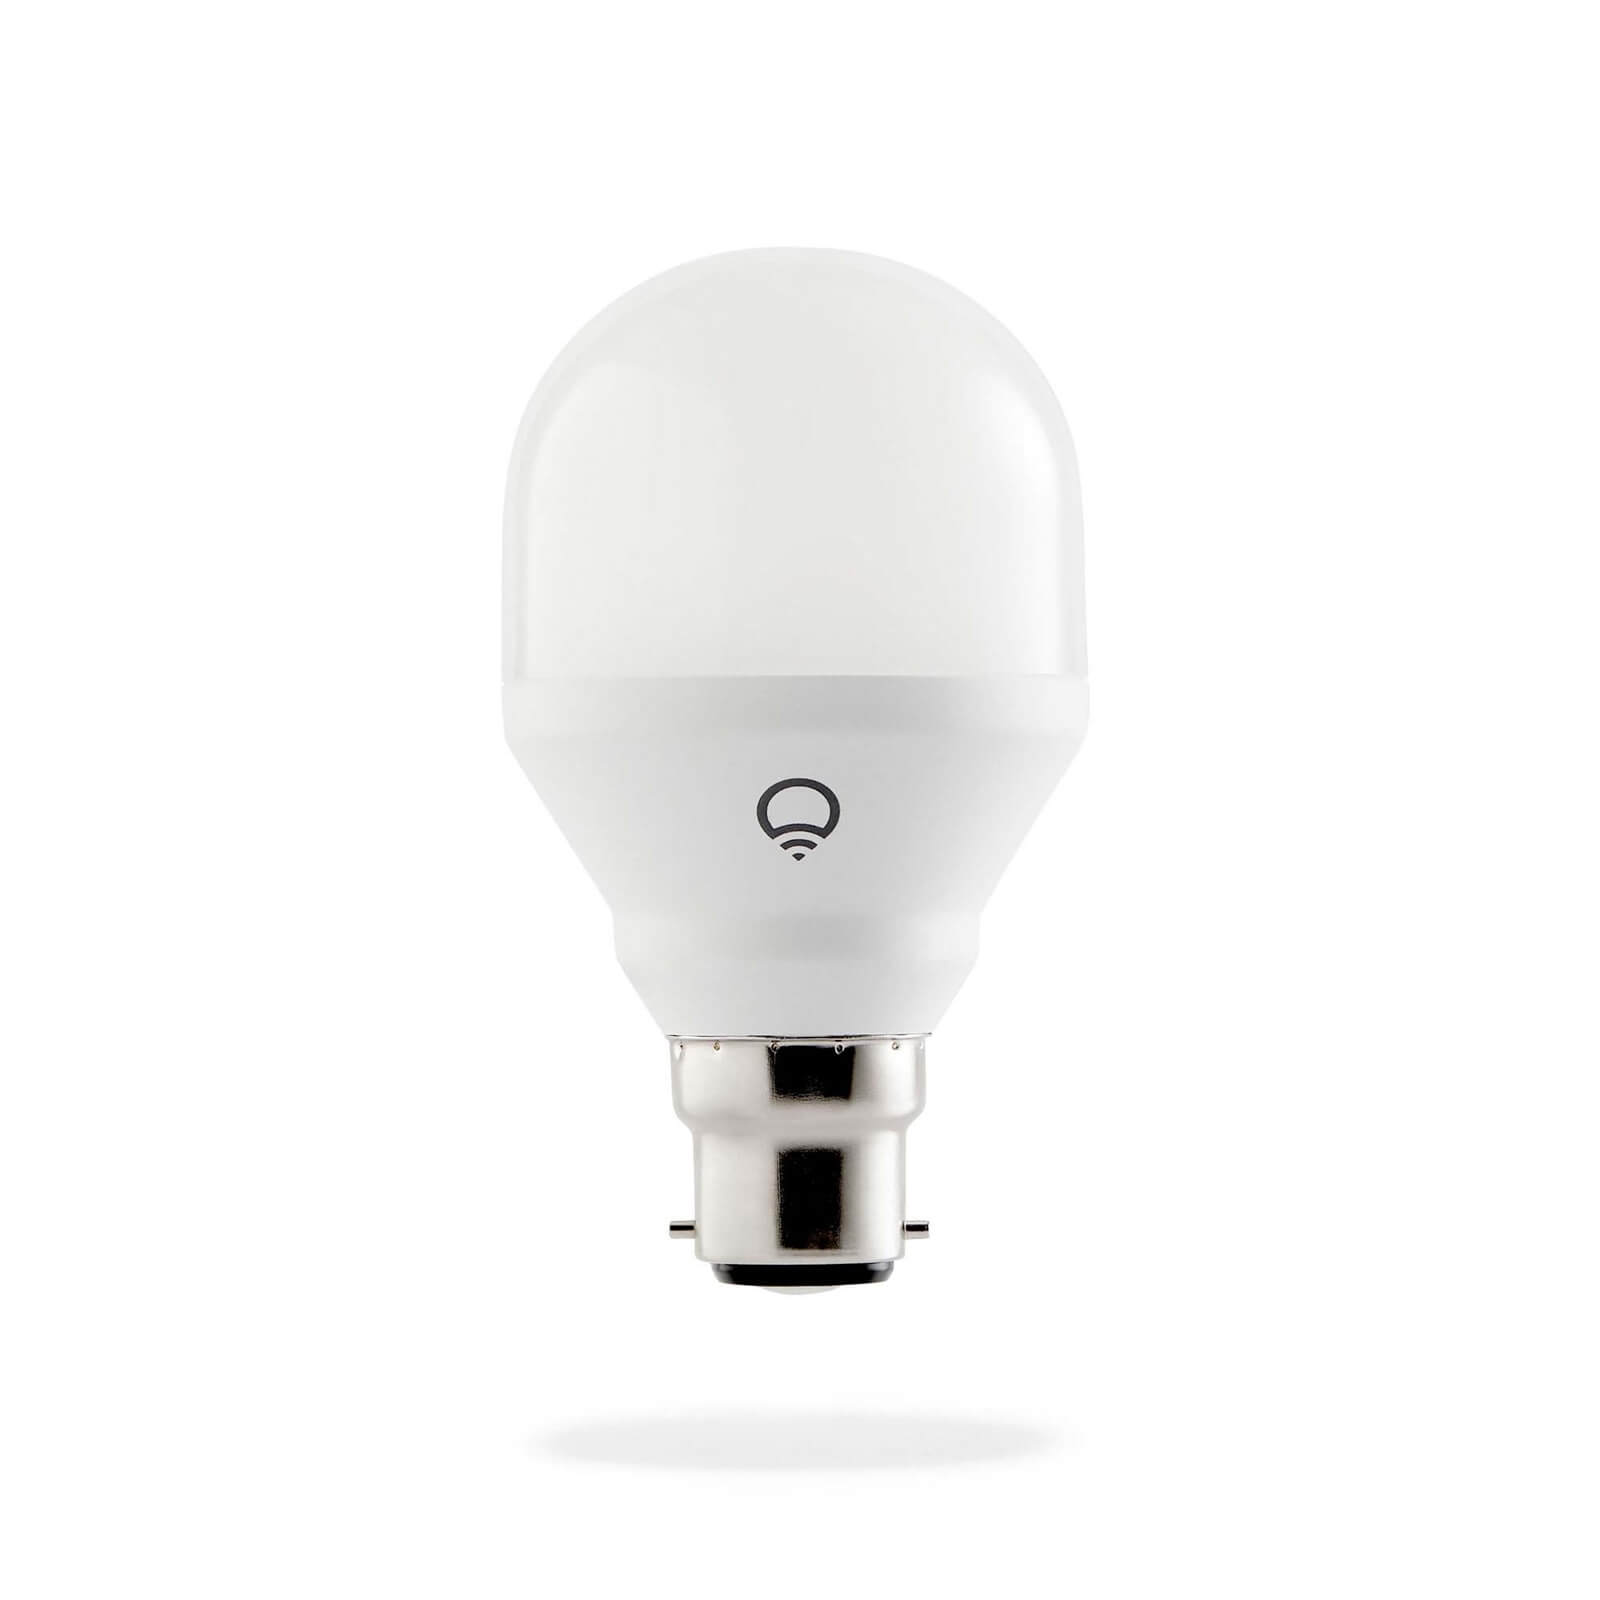 LIFX Mini (B22) Wi-Fi Smart LED Light Bulb - Colour